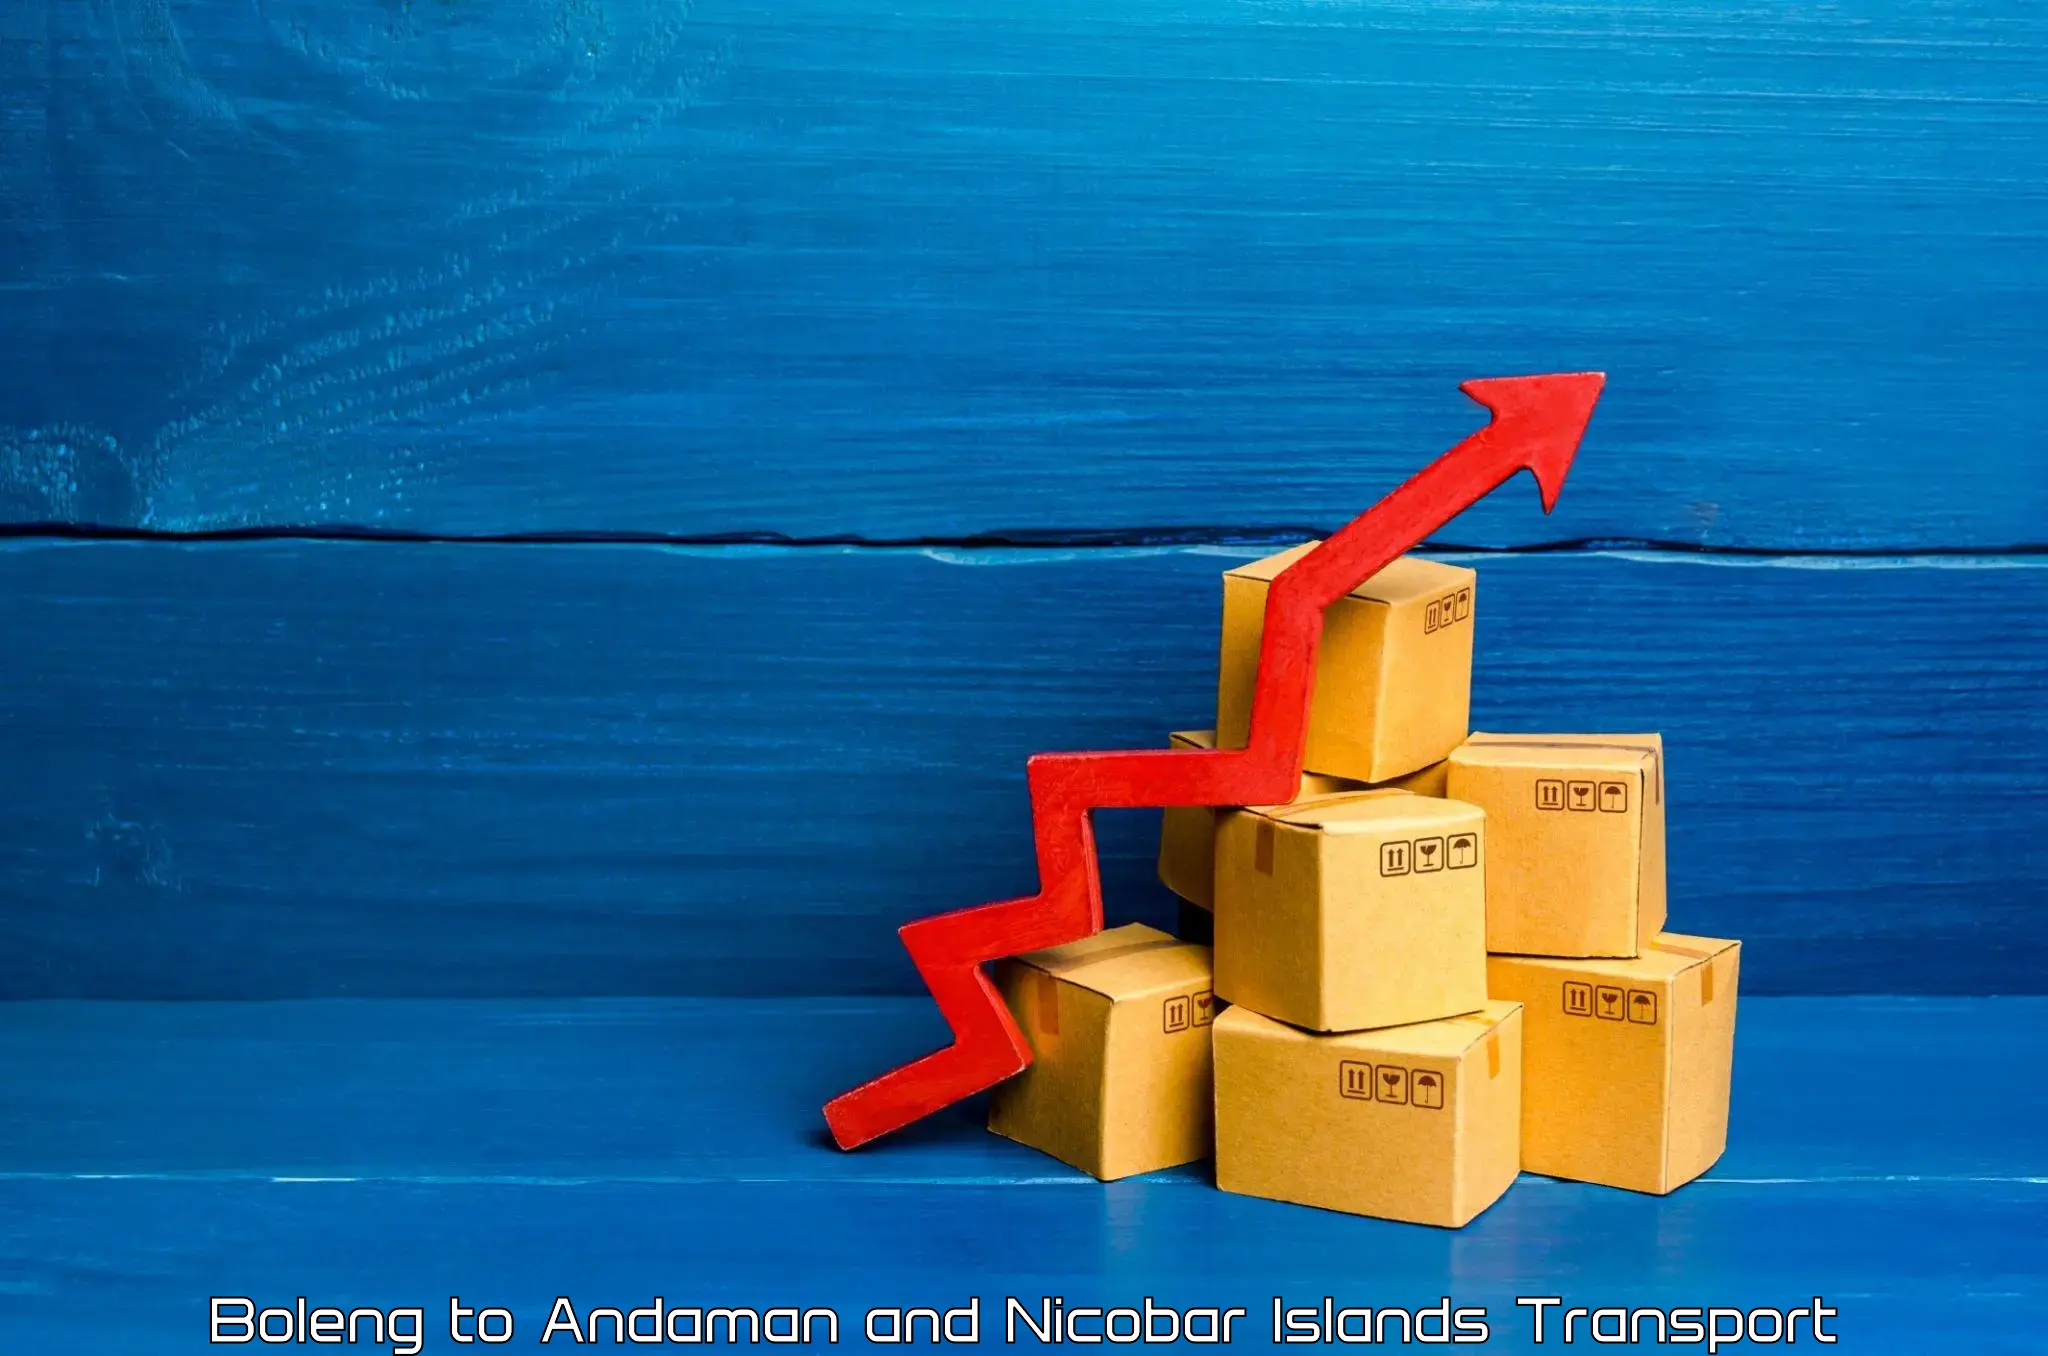 Shipping partner Boleng to Andaman and Nicobar Islands